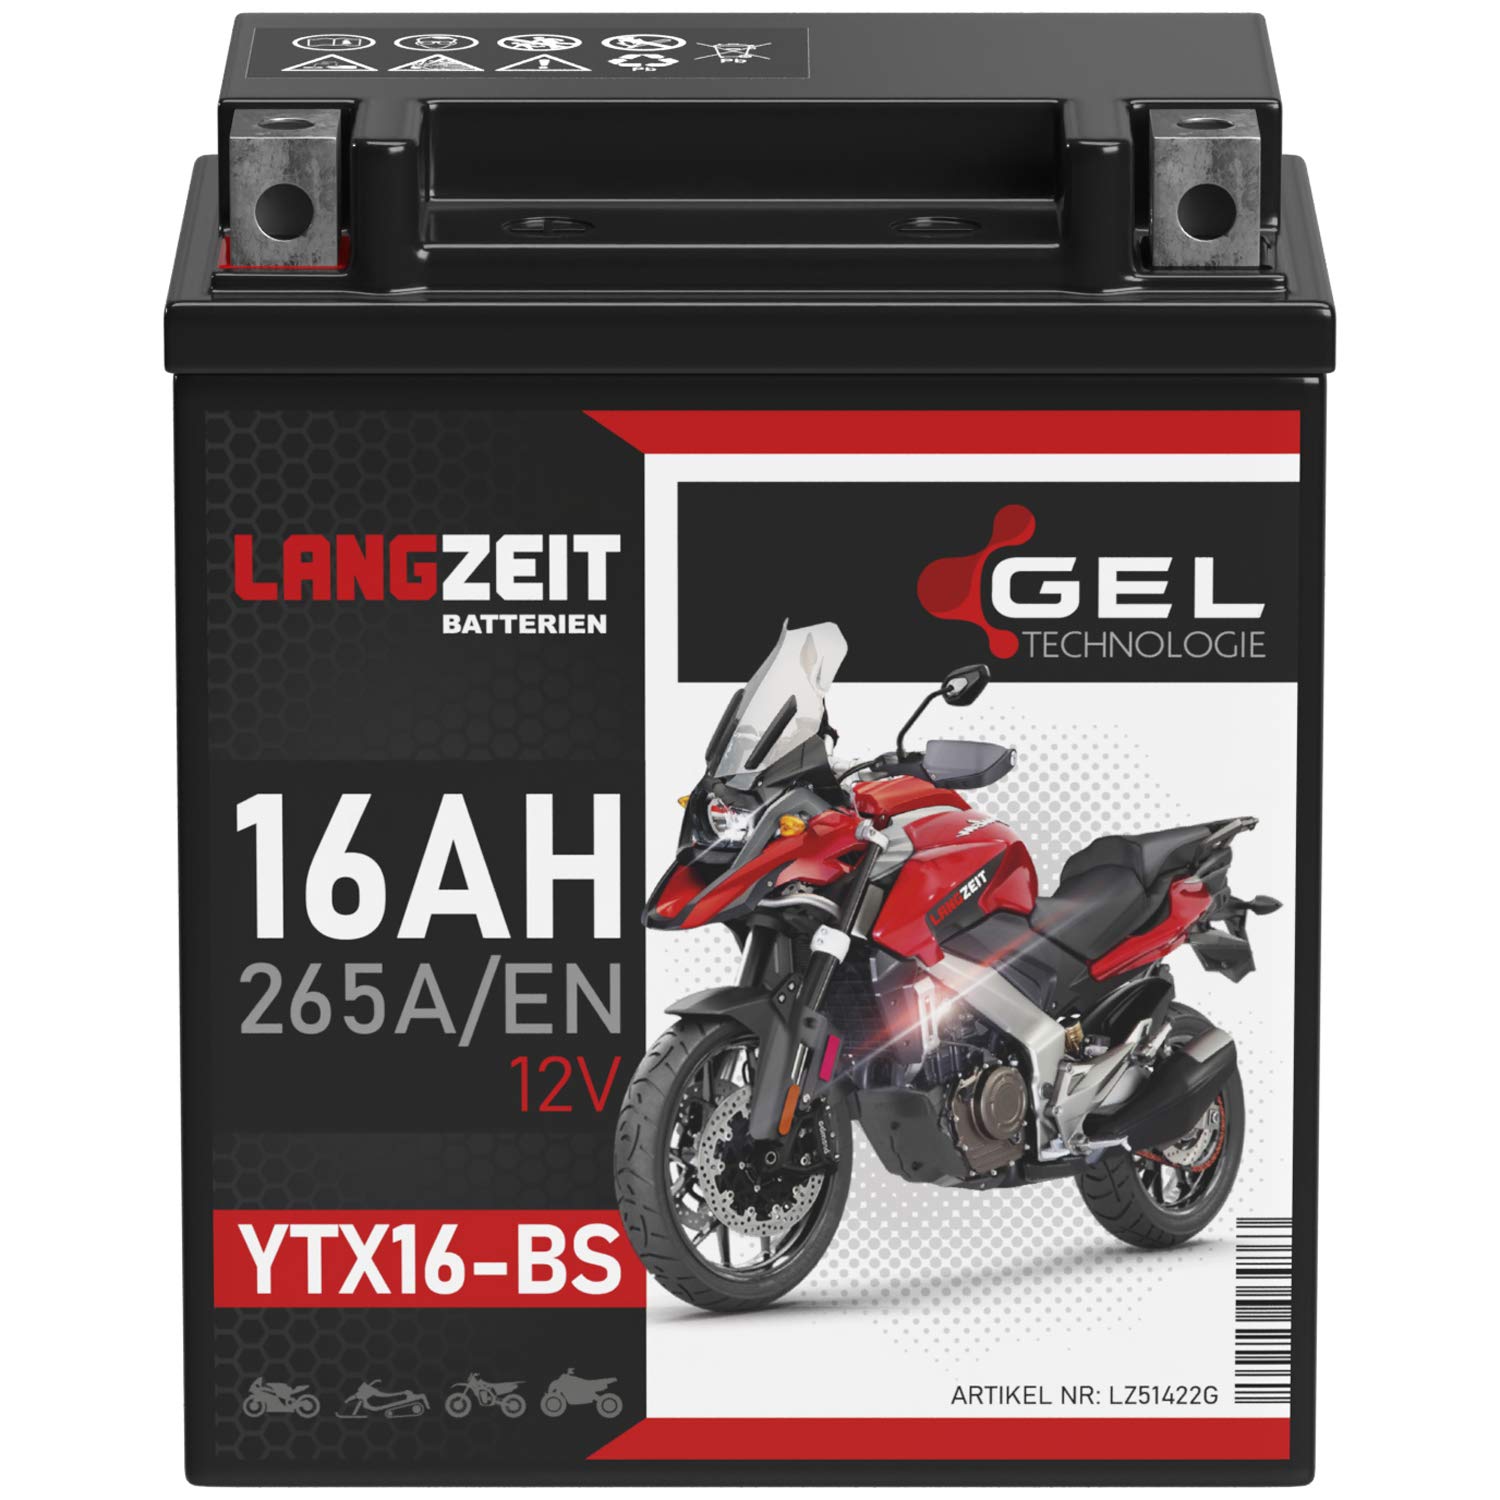 LANGZEIT YTX16-BS GEL Motorradbatterie 12V 16Ah 265A/EN Gel Batterie 12V 51422 YTX16-4 YTX16BS ETX16-BS auslaufsicher wartungsfrei ersetzt 14Ah von LANGZEIT Batterien